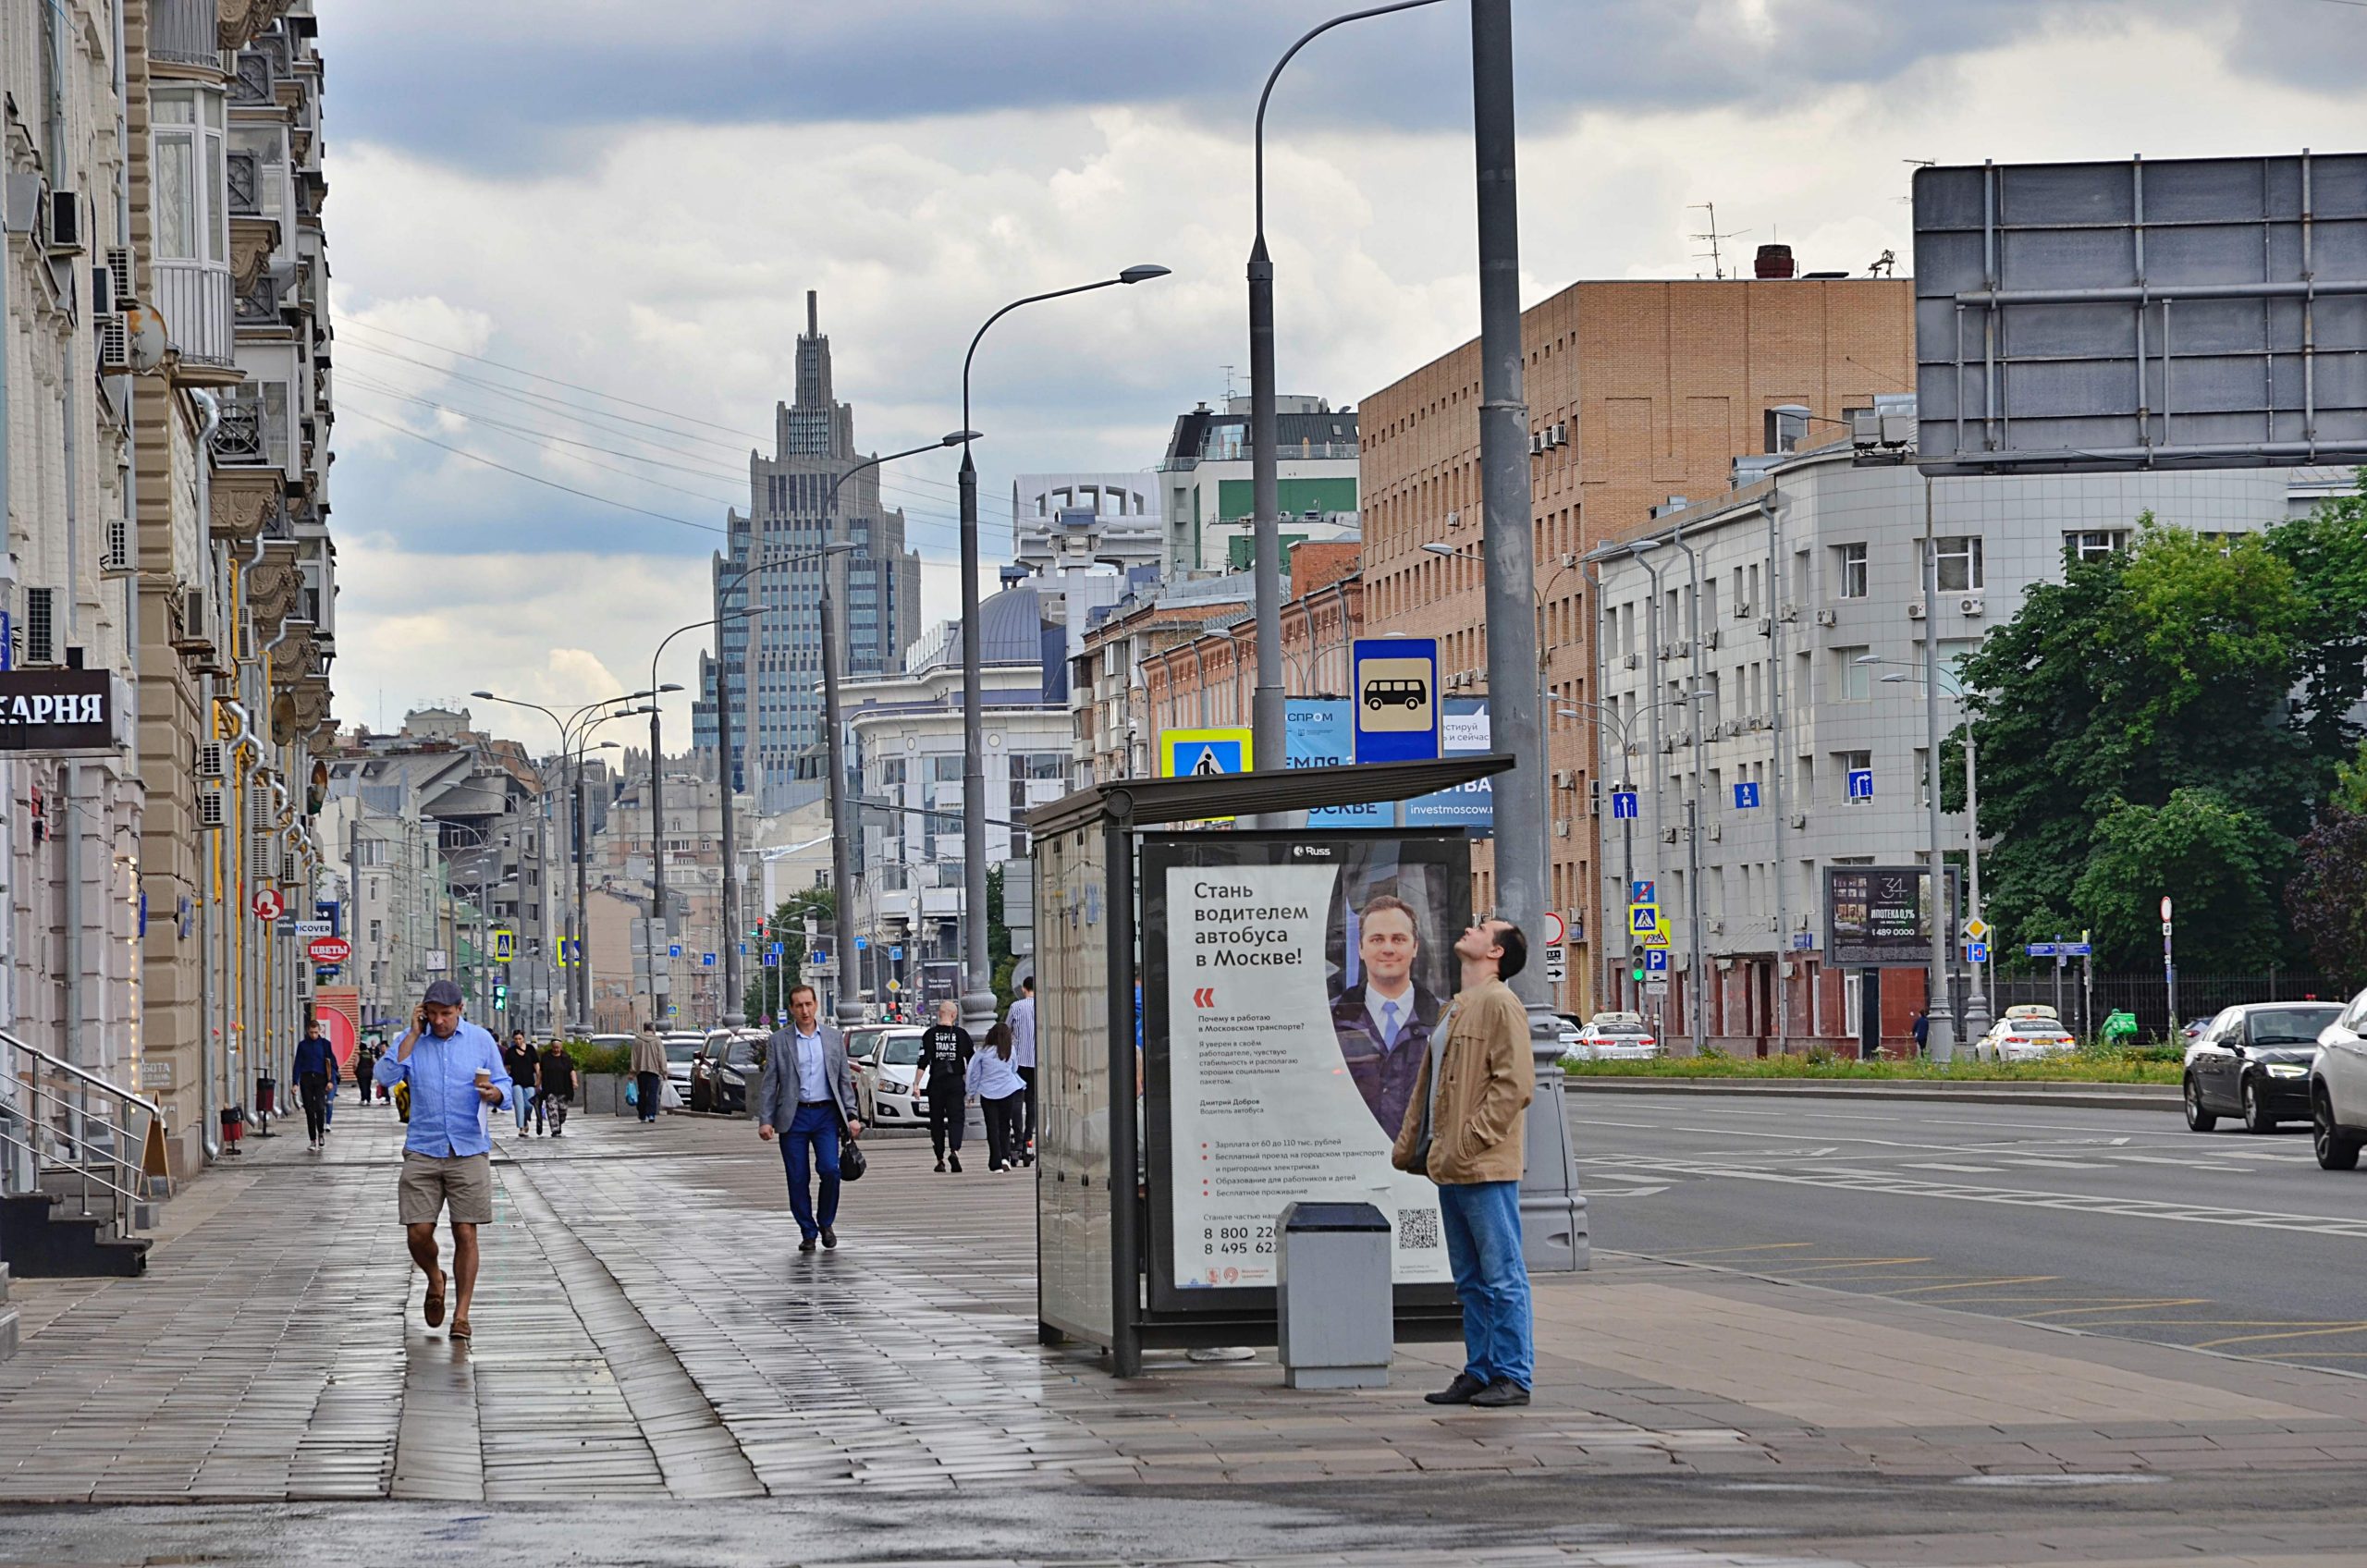 Облачная погода с прояснениями ожидается в Москве и Подмосковье в воскресенье